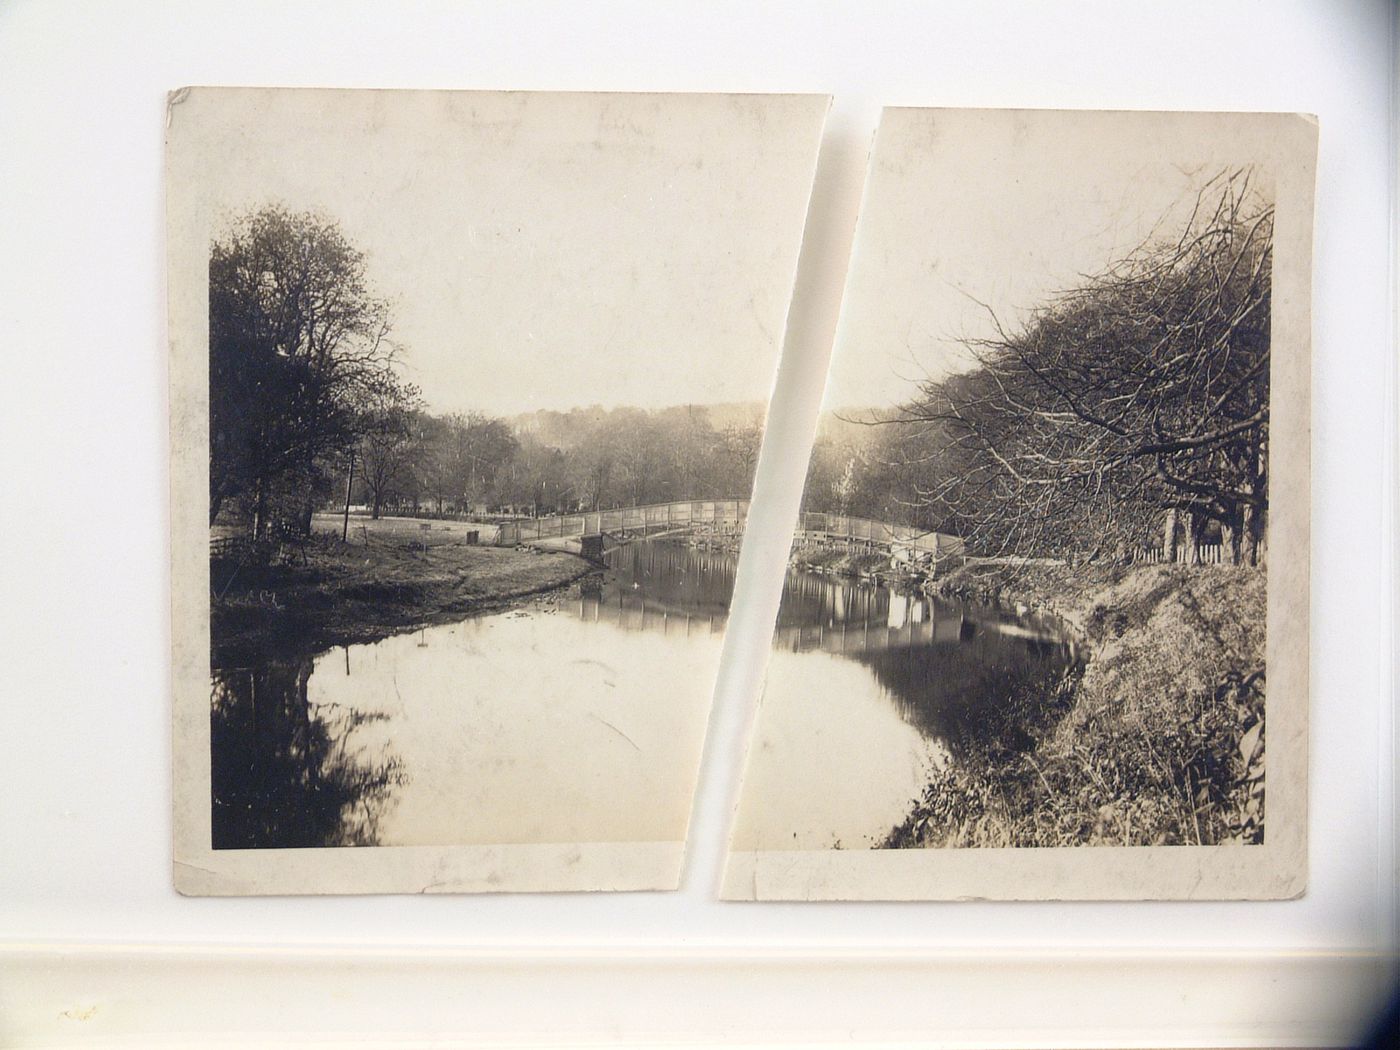 View of footbridge over pond in rural settling